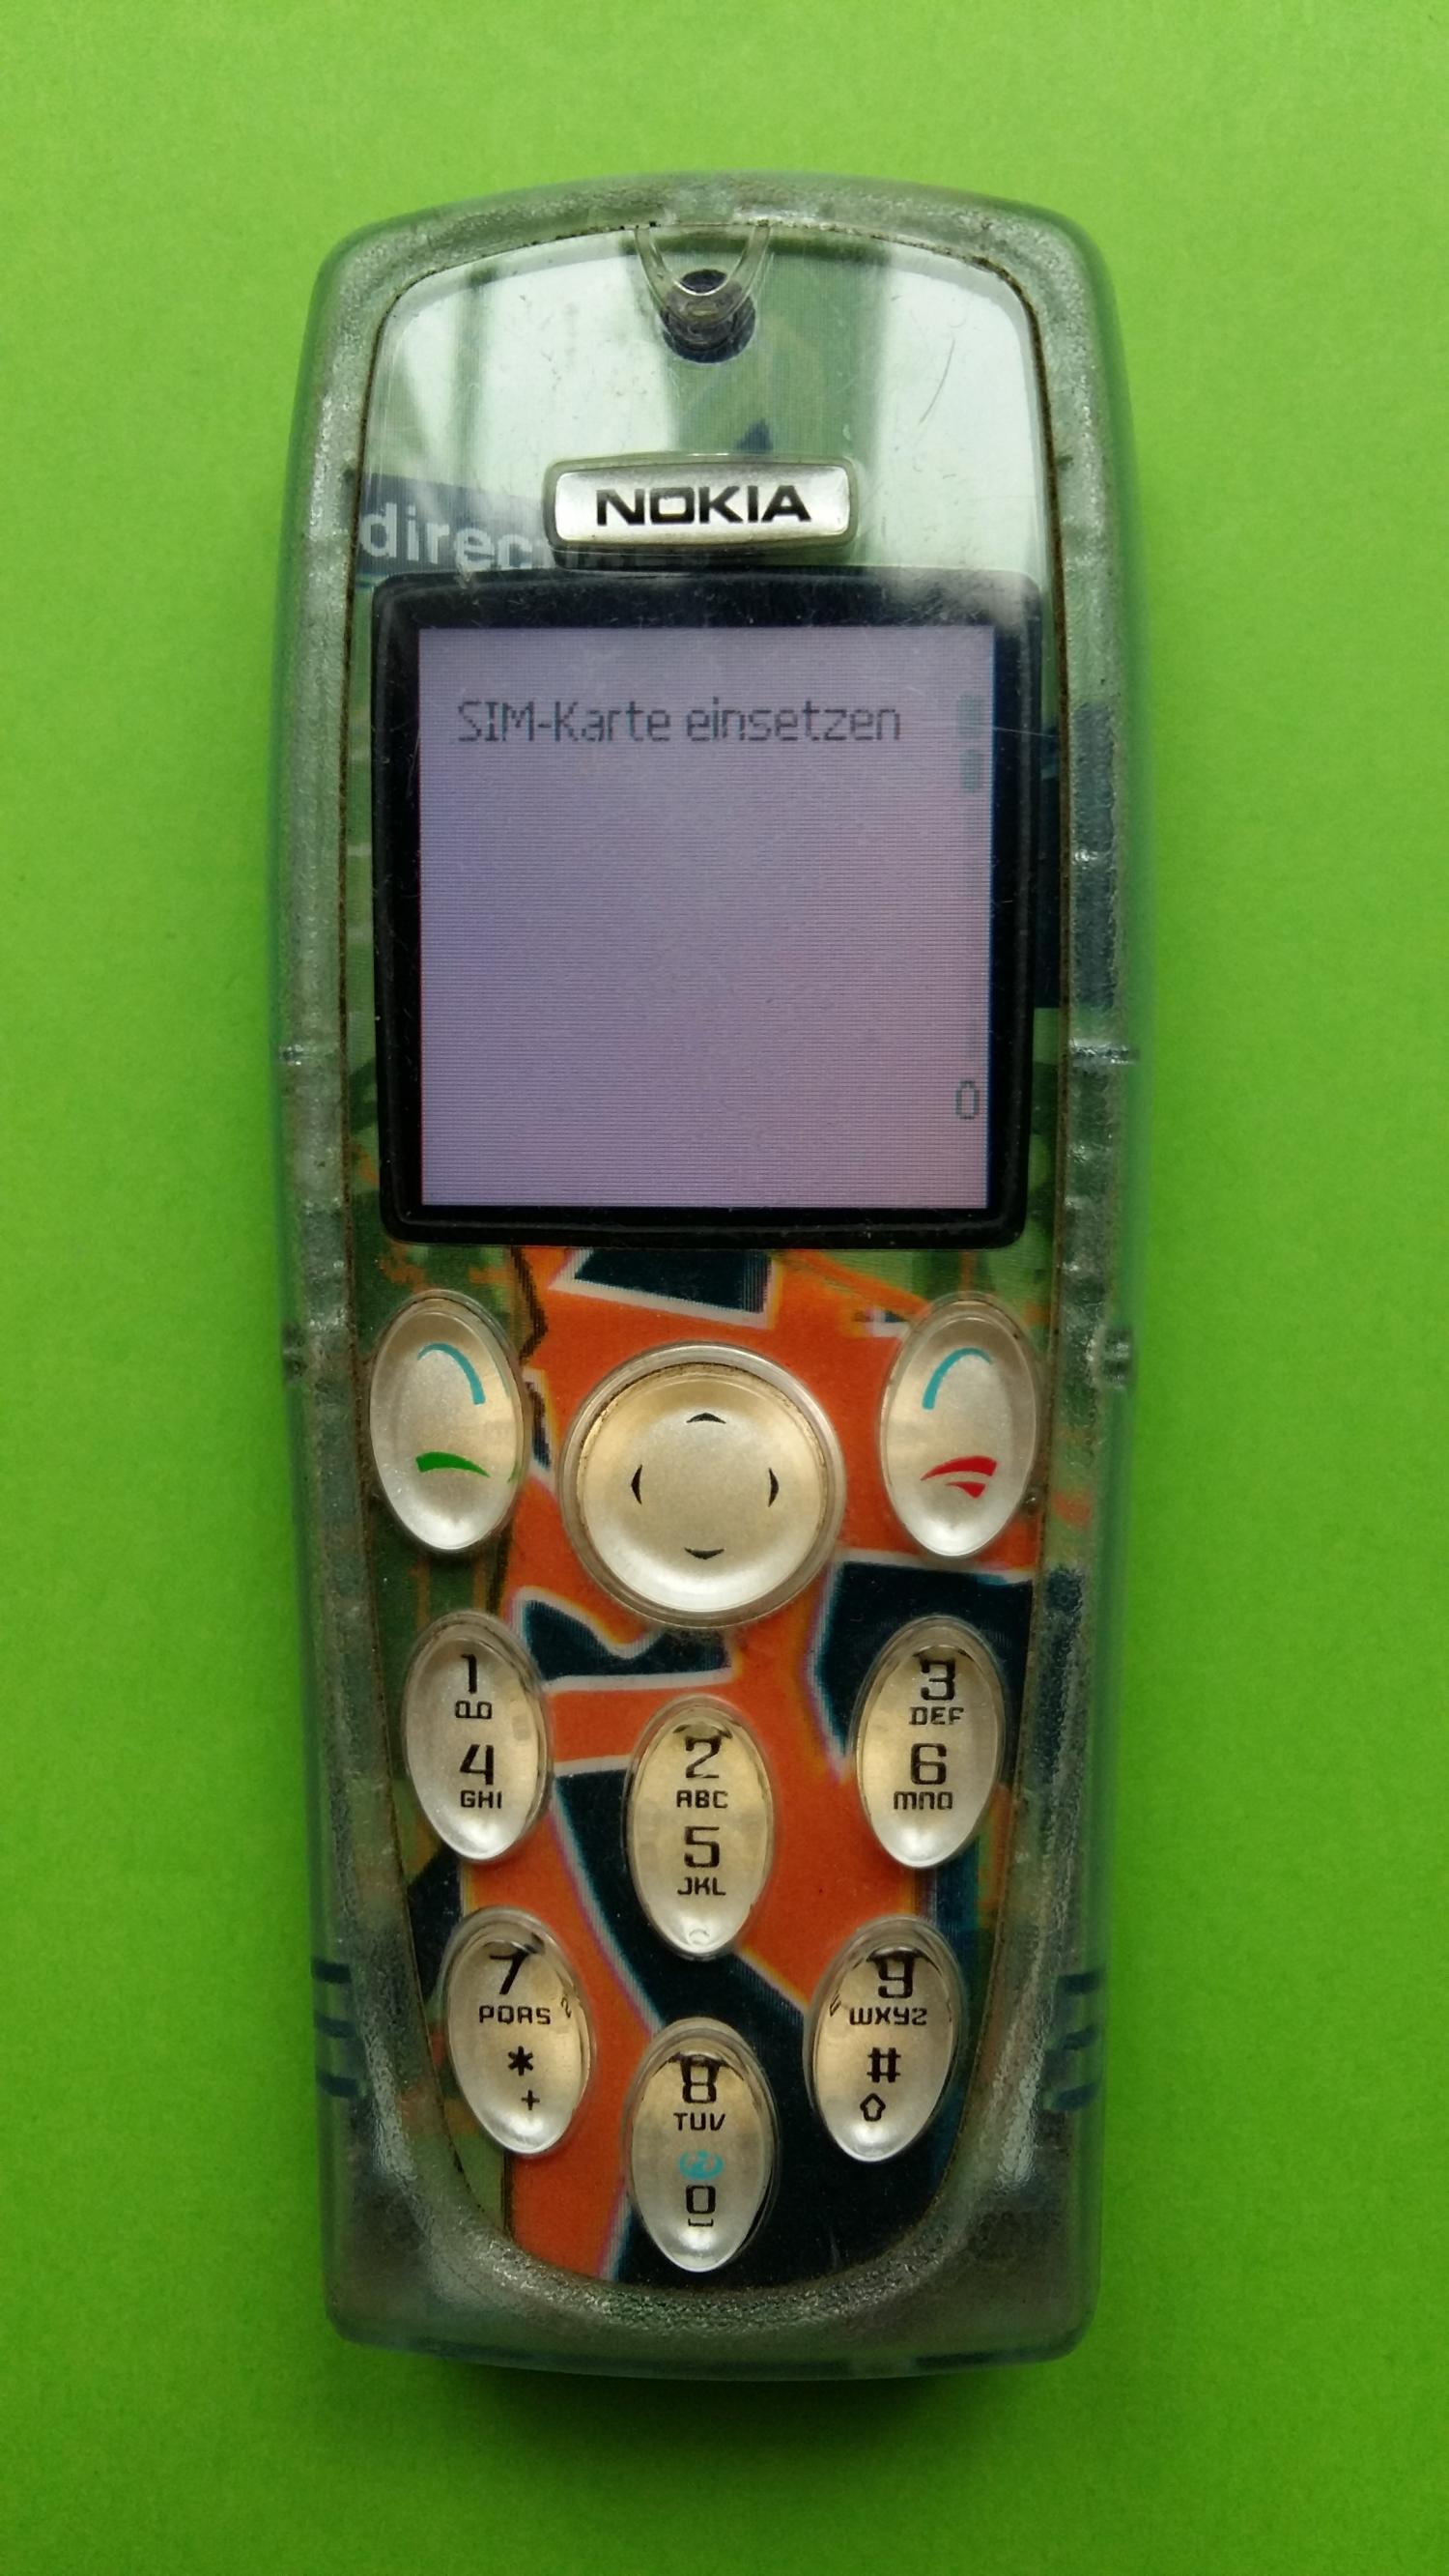 image-7321233-Nokia 3200 (3)1.jpg